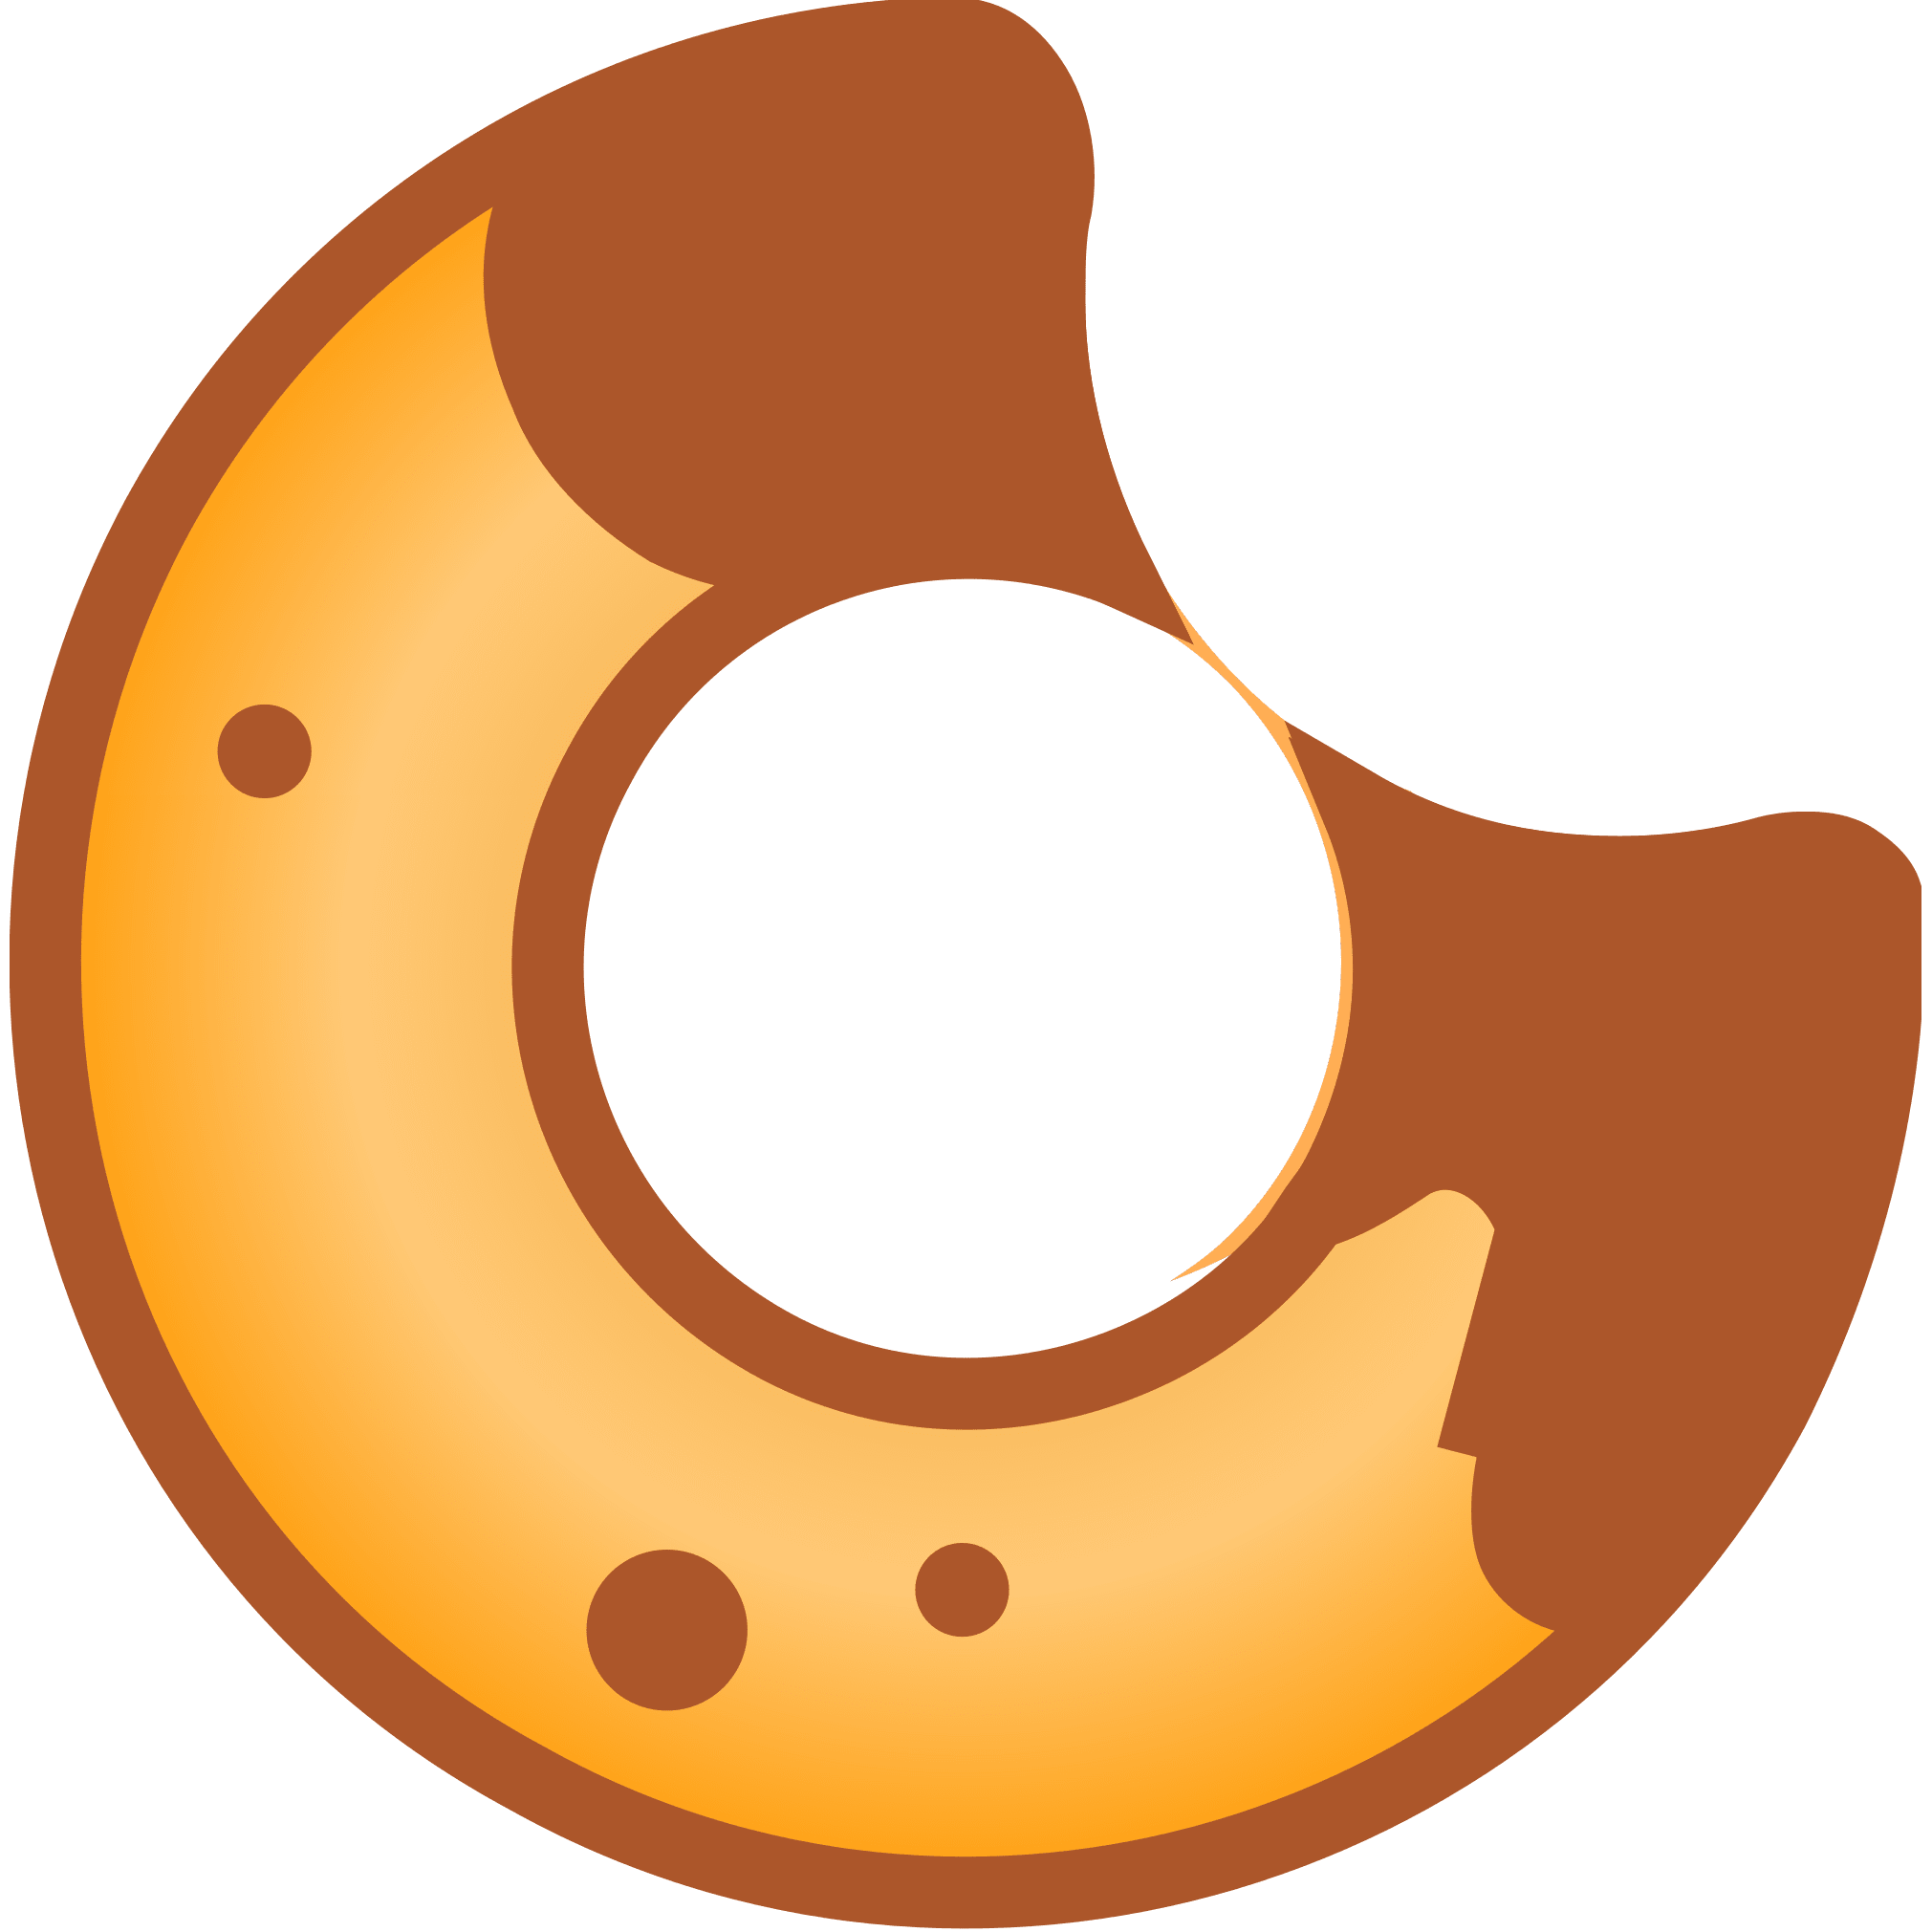 BakeryToken (BAKE) logo